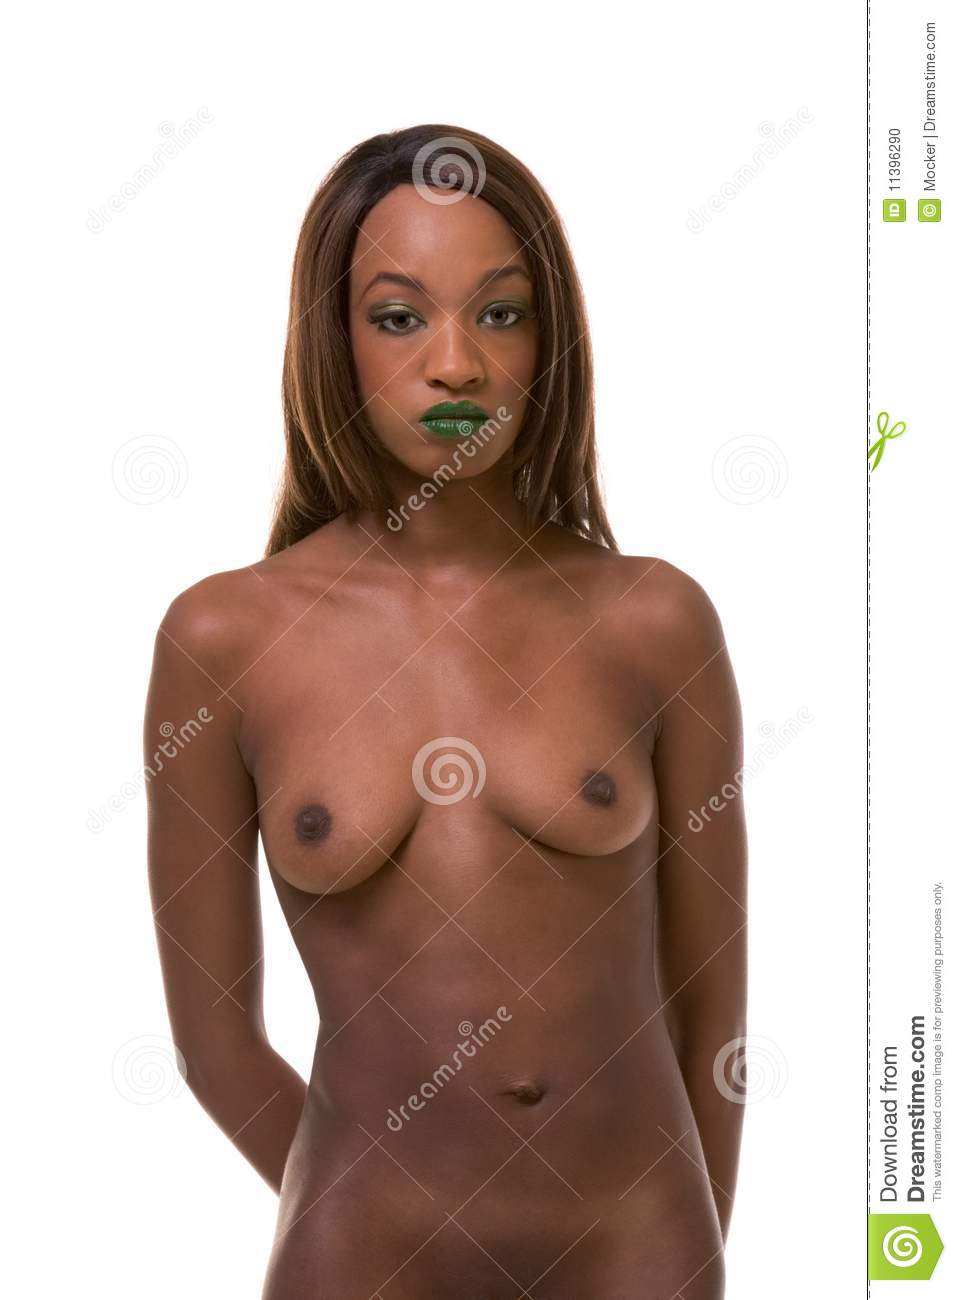 Viper reccomend Topless pics of black women